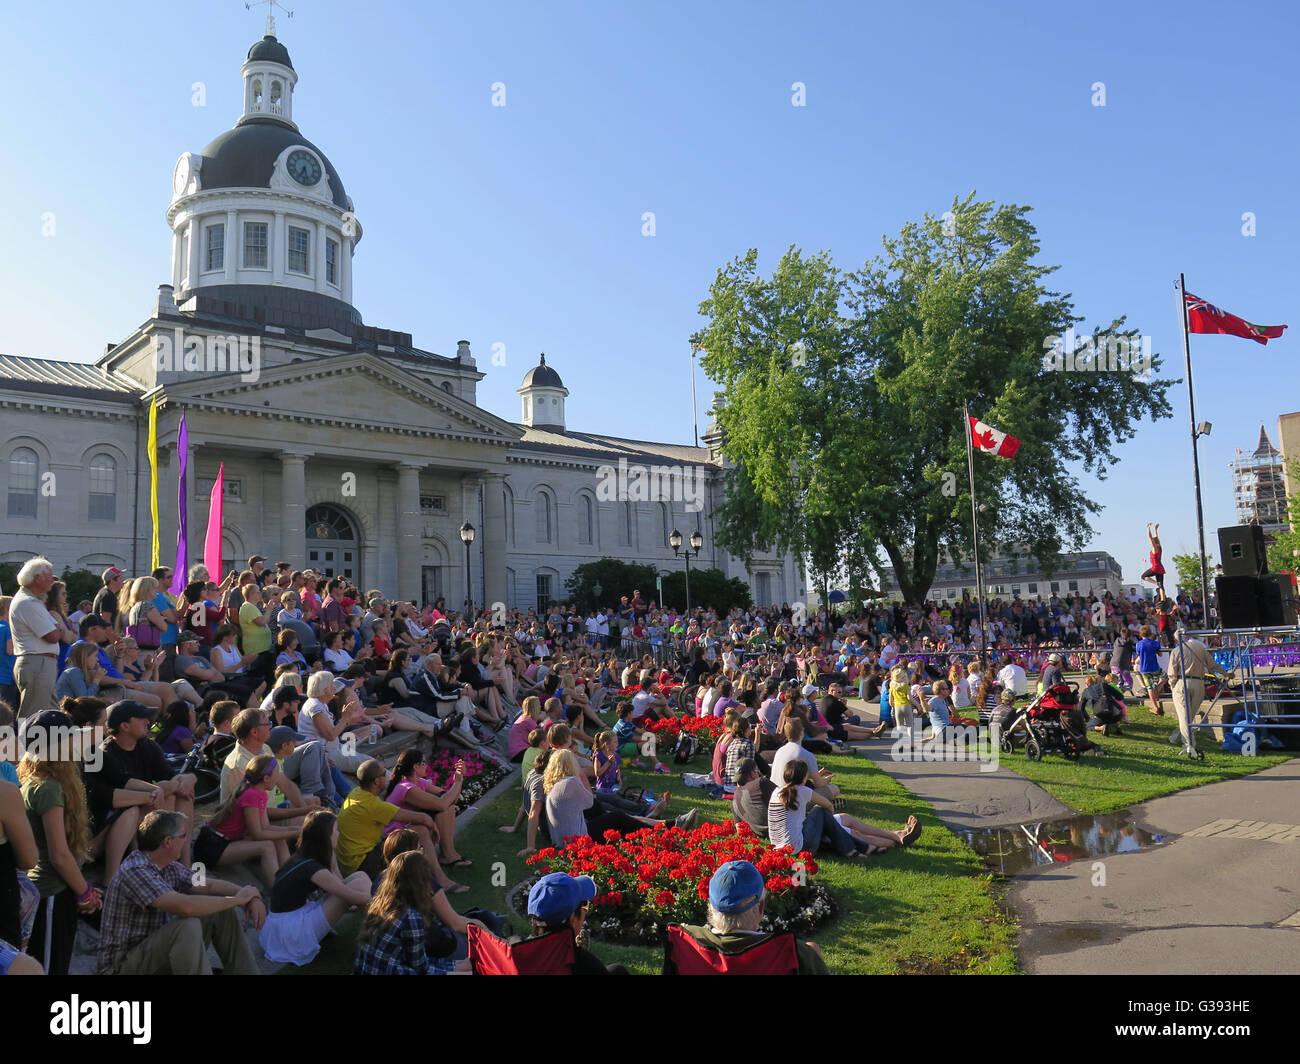 City hall, Kingston, Ontario, Canada Stock Photo